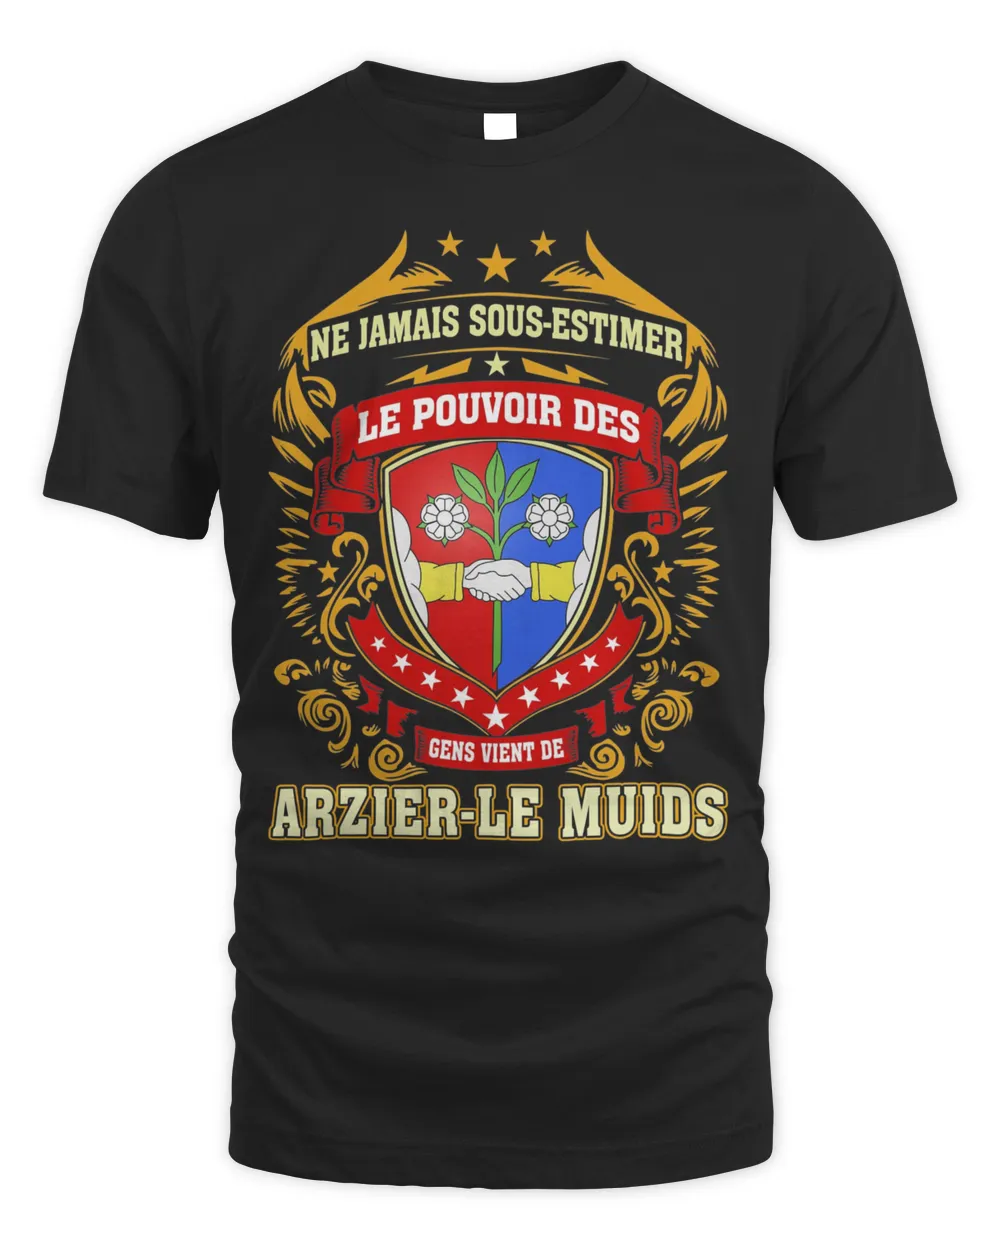 Ne Jamais Sous-estimer Le Pouvoir Des Gens Vient De Arzier-Le Muids Shirt